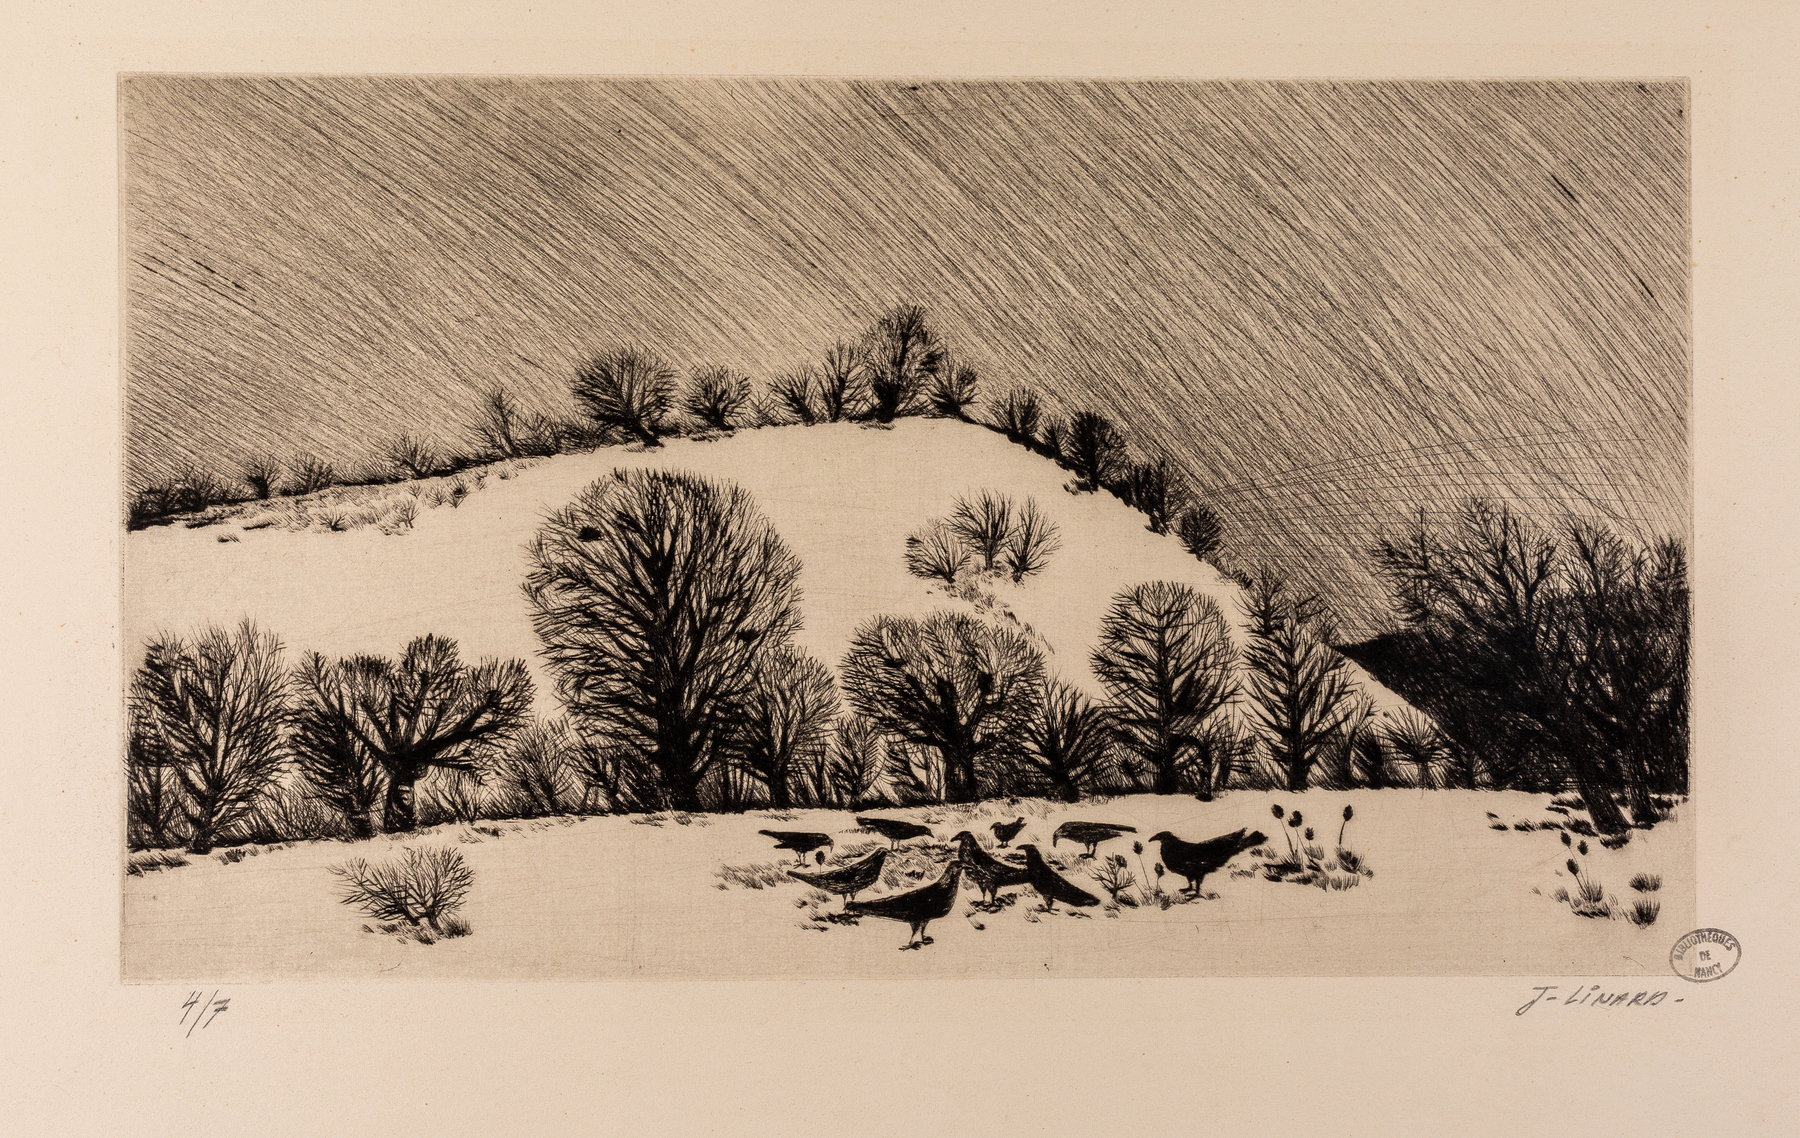 Contenu du Sans titre : paysage de neige avec un groupe de corbeaux au premier plan